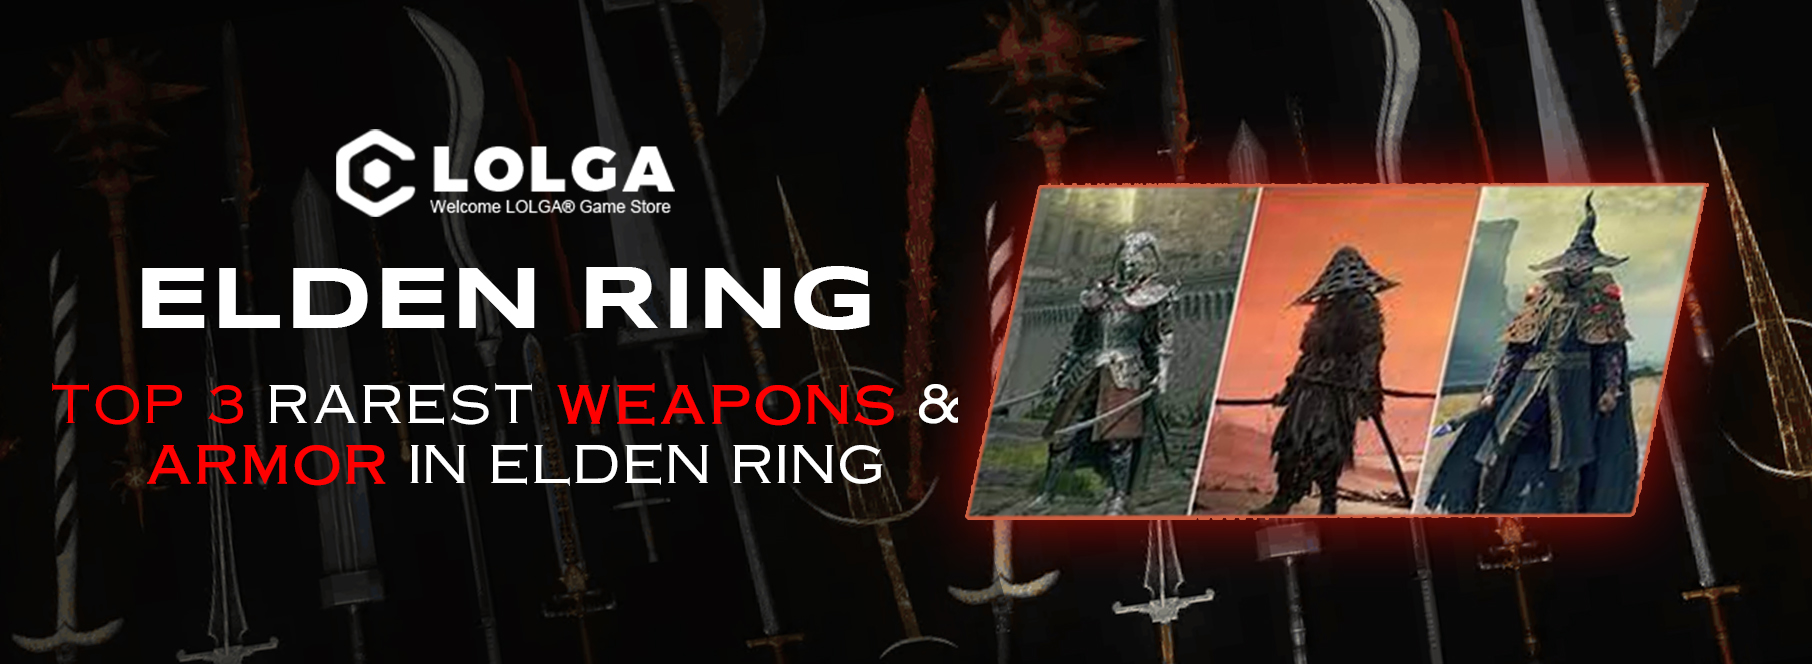 Top 3 Rarest Weapons & Armor In Elden Ring 